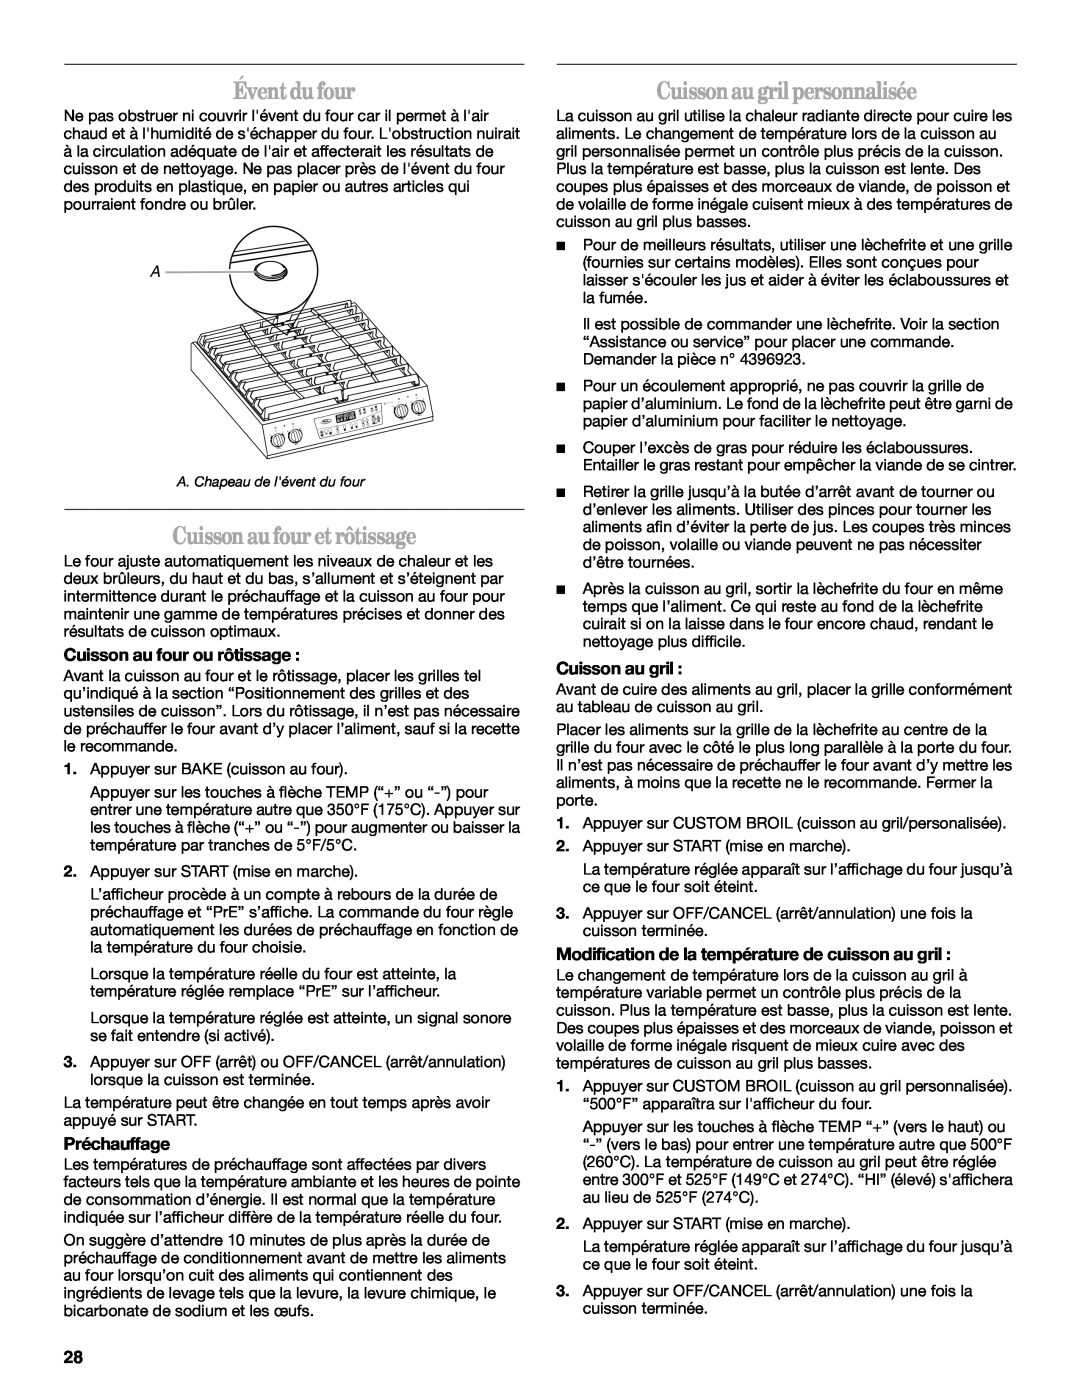 Whirlpool W10086240 manual Évent du four, Cuisson au four et rôtissage, Cuisson au gril personnalisée, Préchauffage 